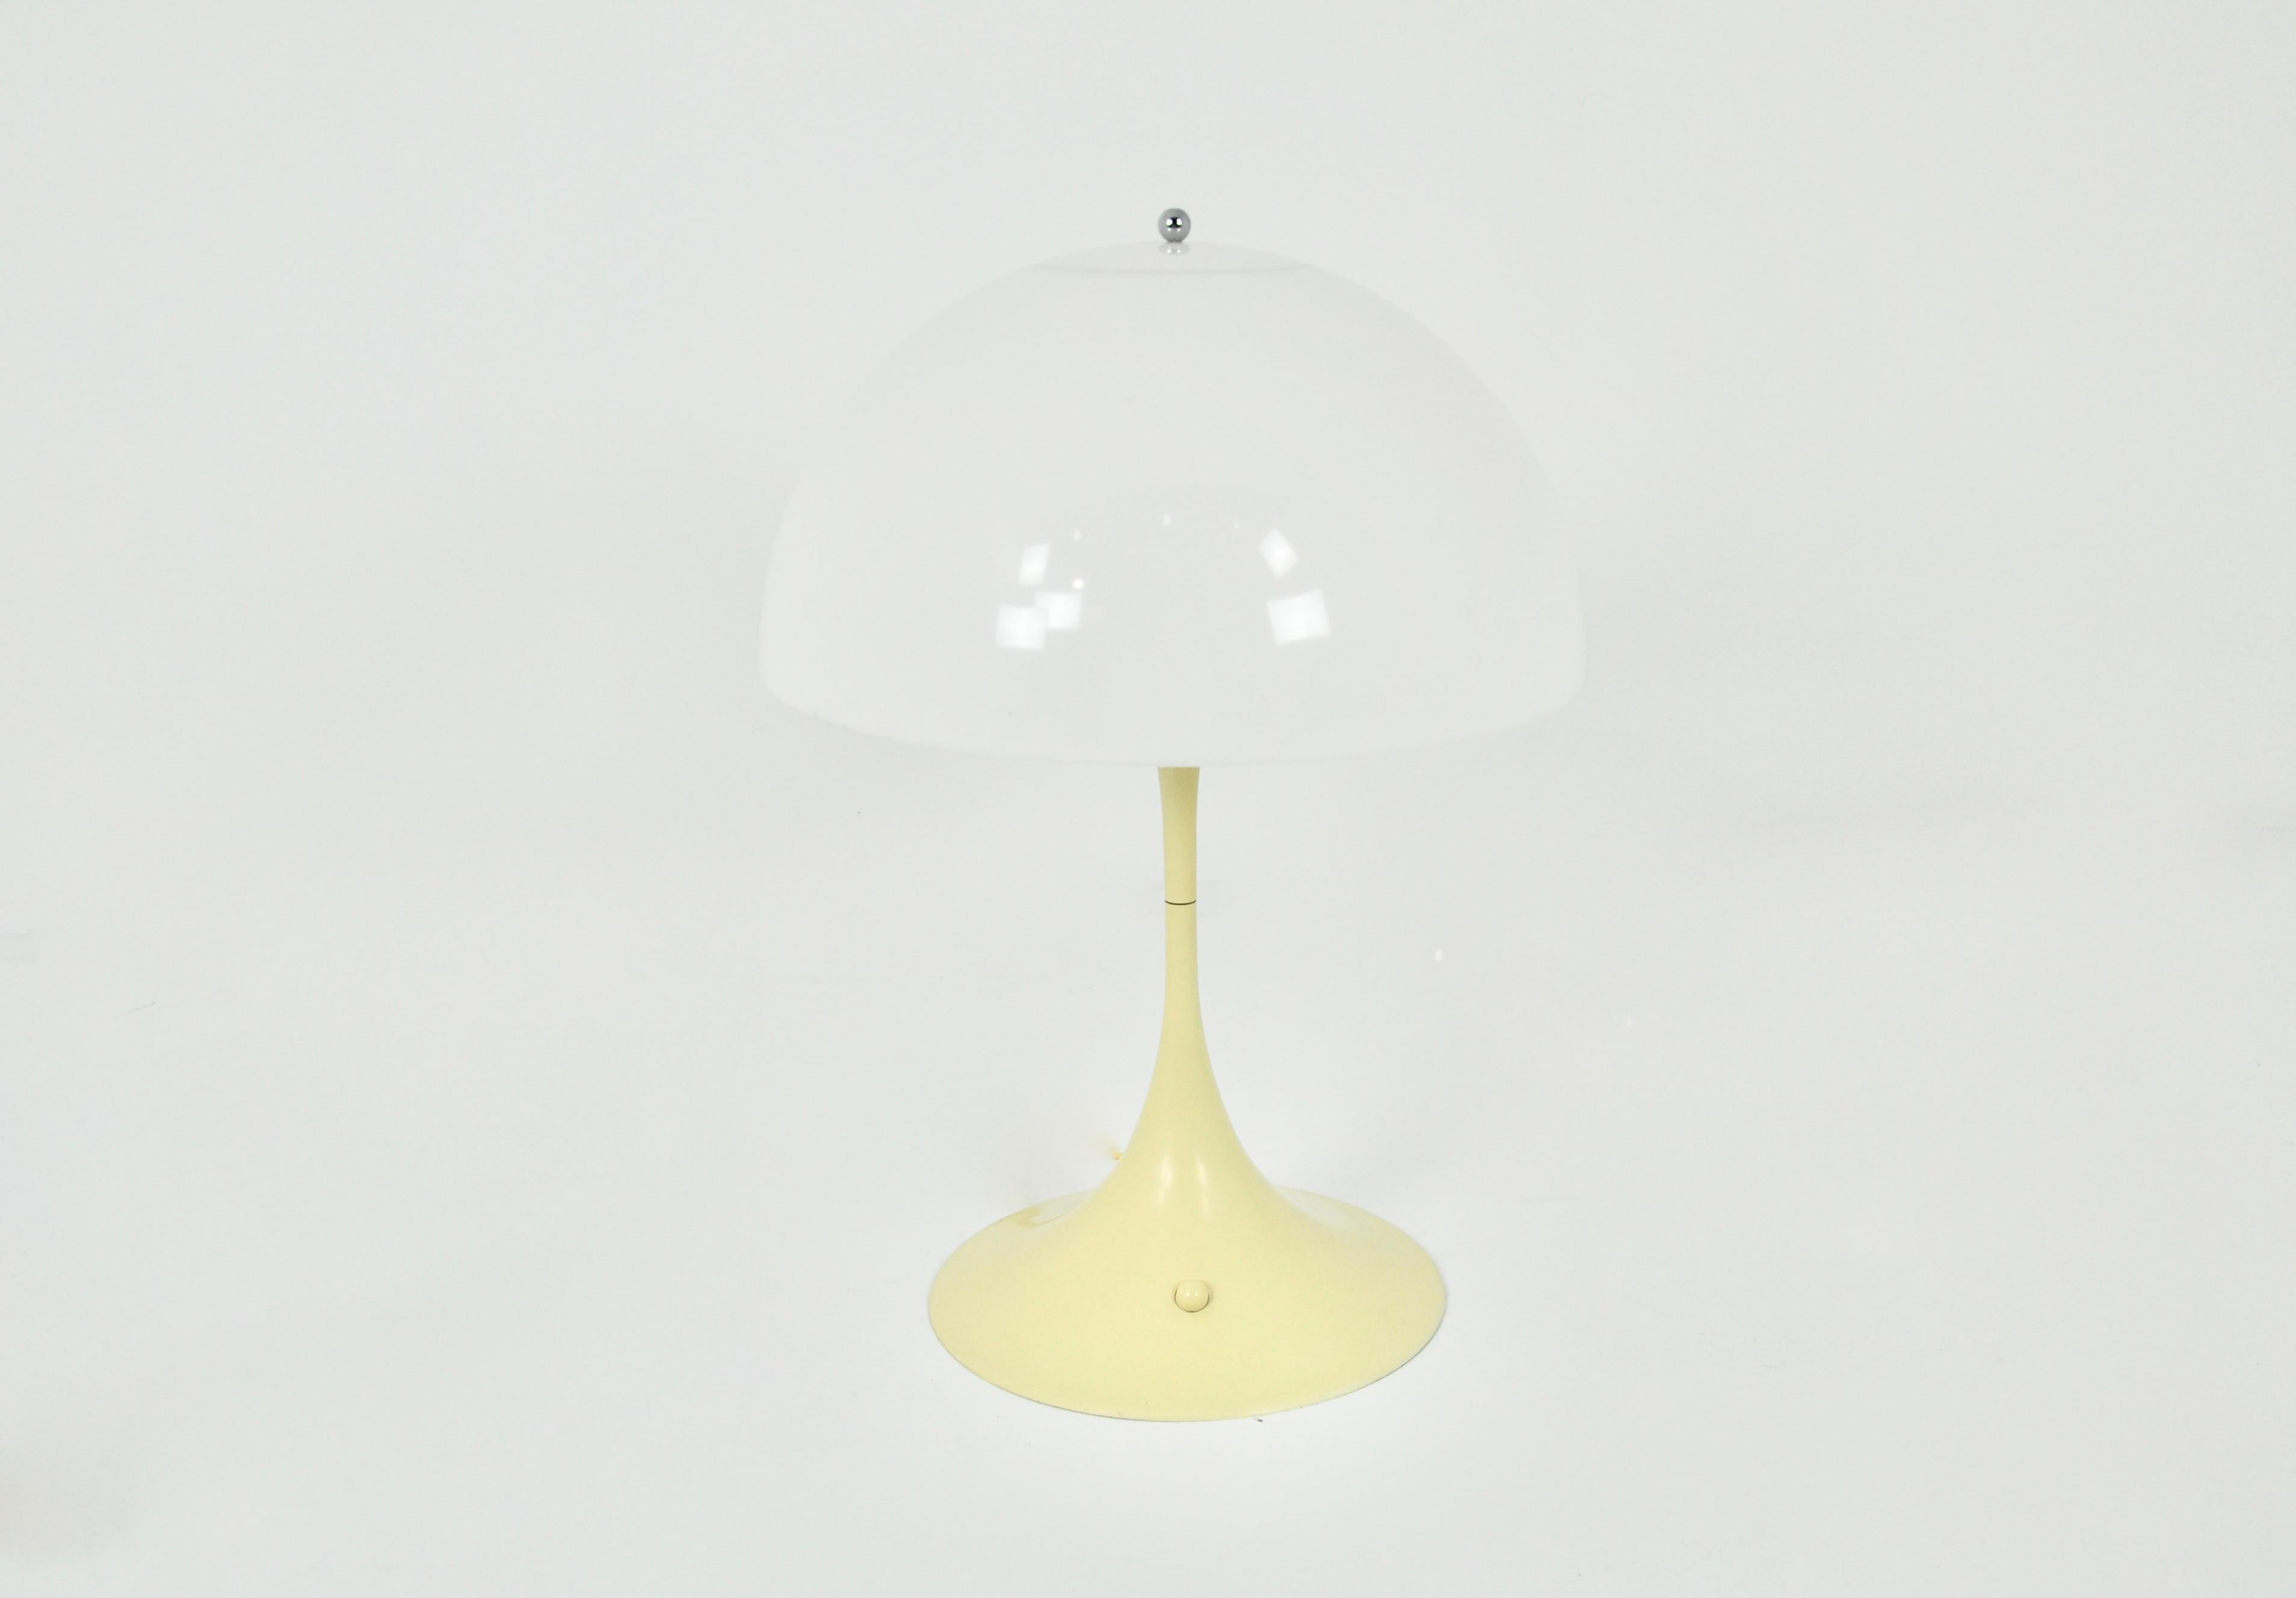 Lampe en plastique et métal de couleur blanc crème. Estampillé sous la lampe. Usure due au temps et à l'âge de la lampe.